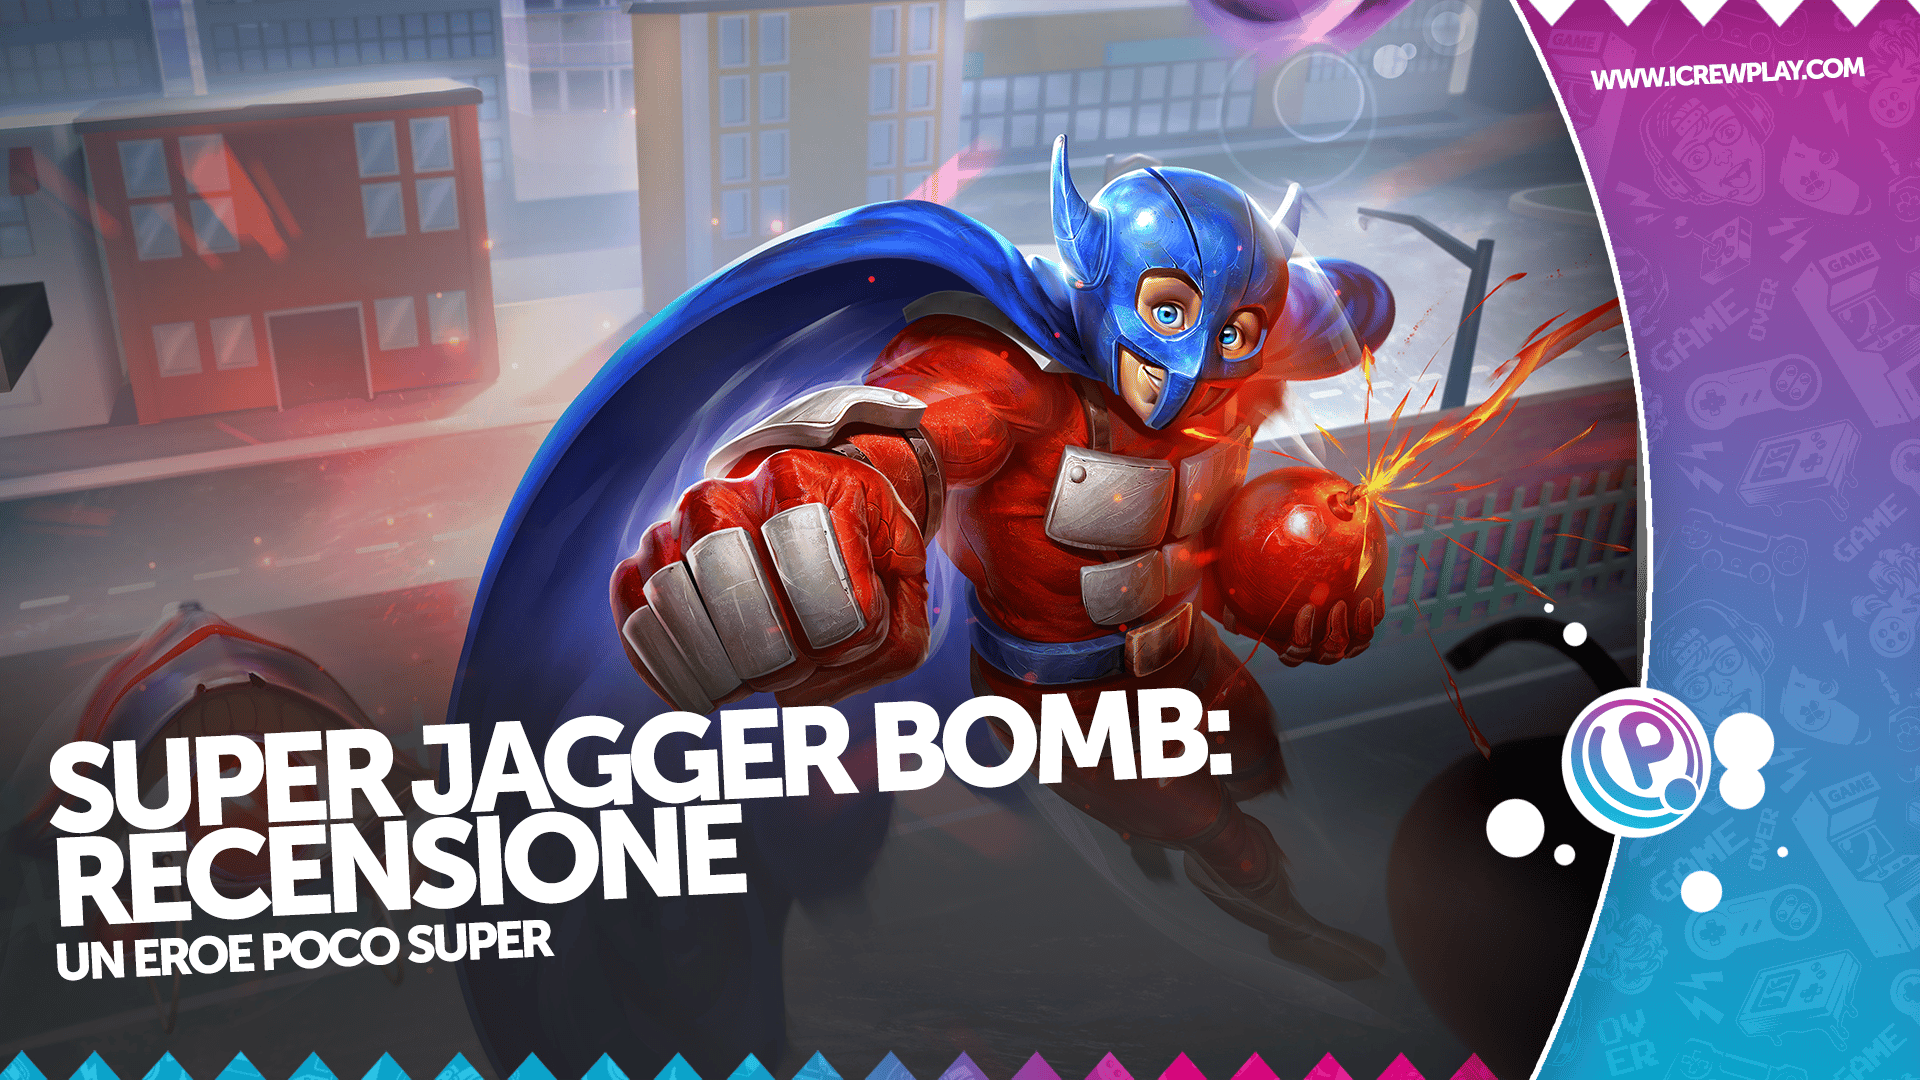 Super Jagger Bomb: Recensione Nintendo Switch 2